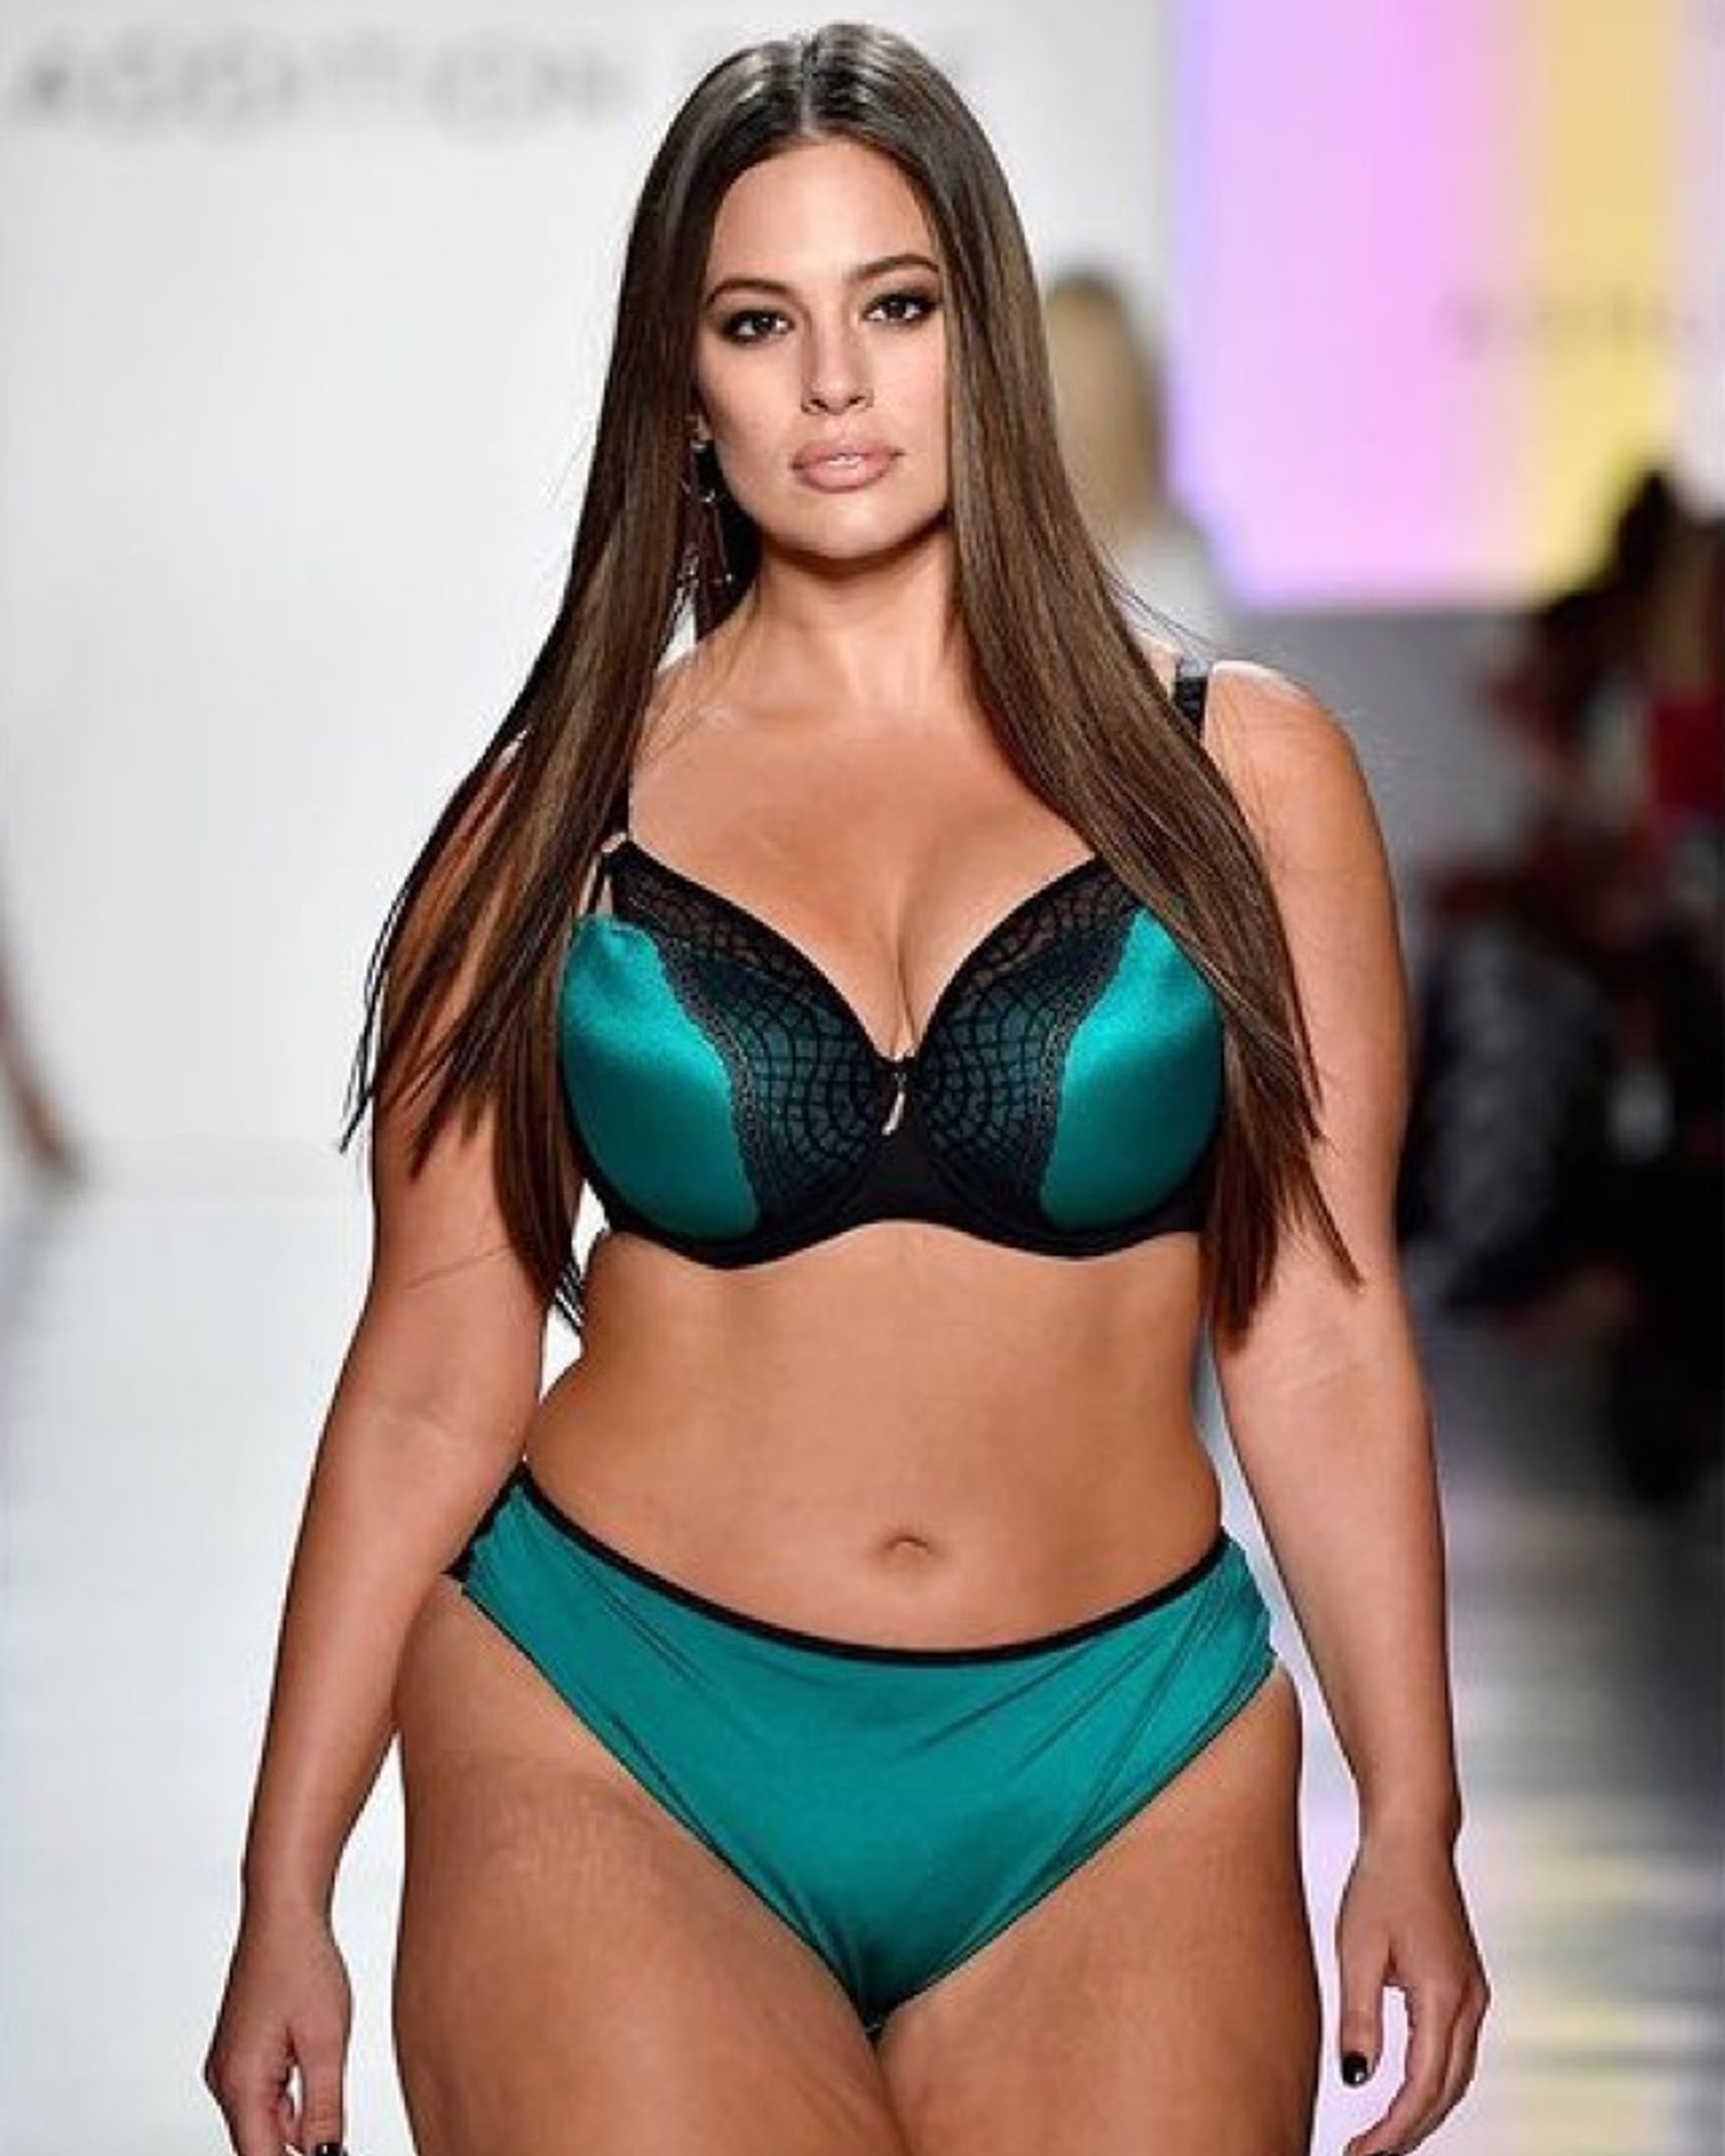 hottest plus size bikini models-ashleygraham